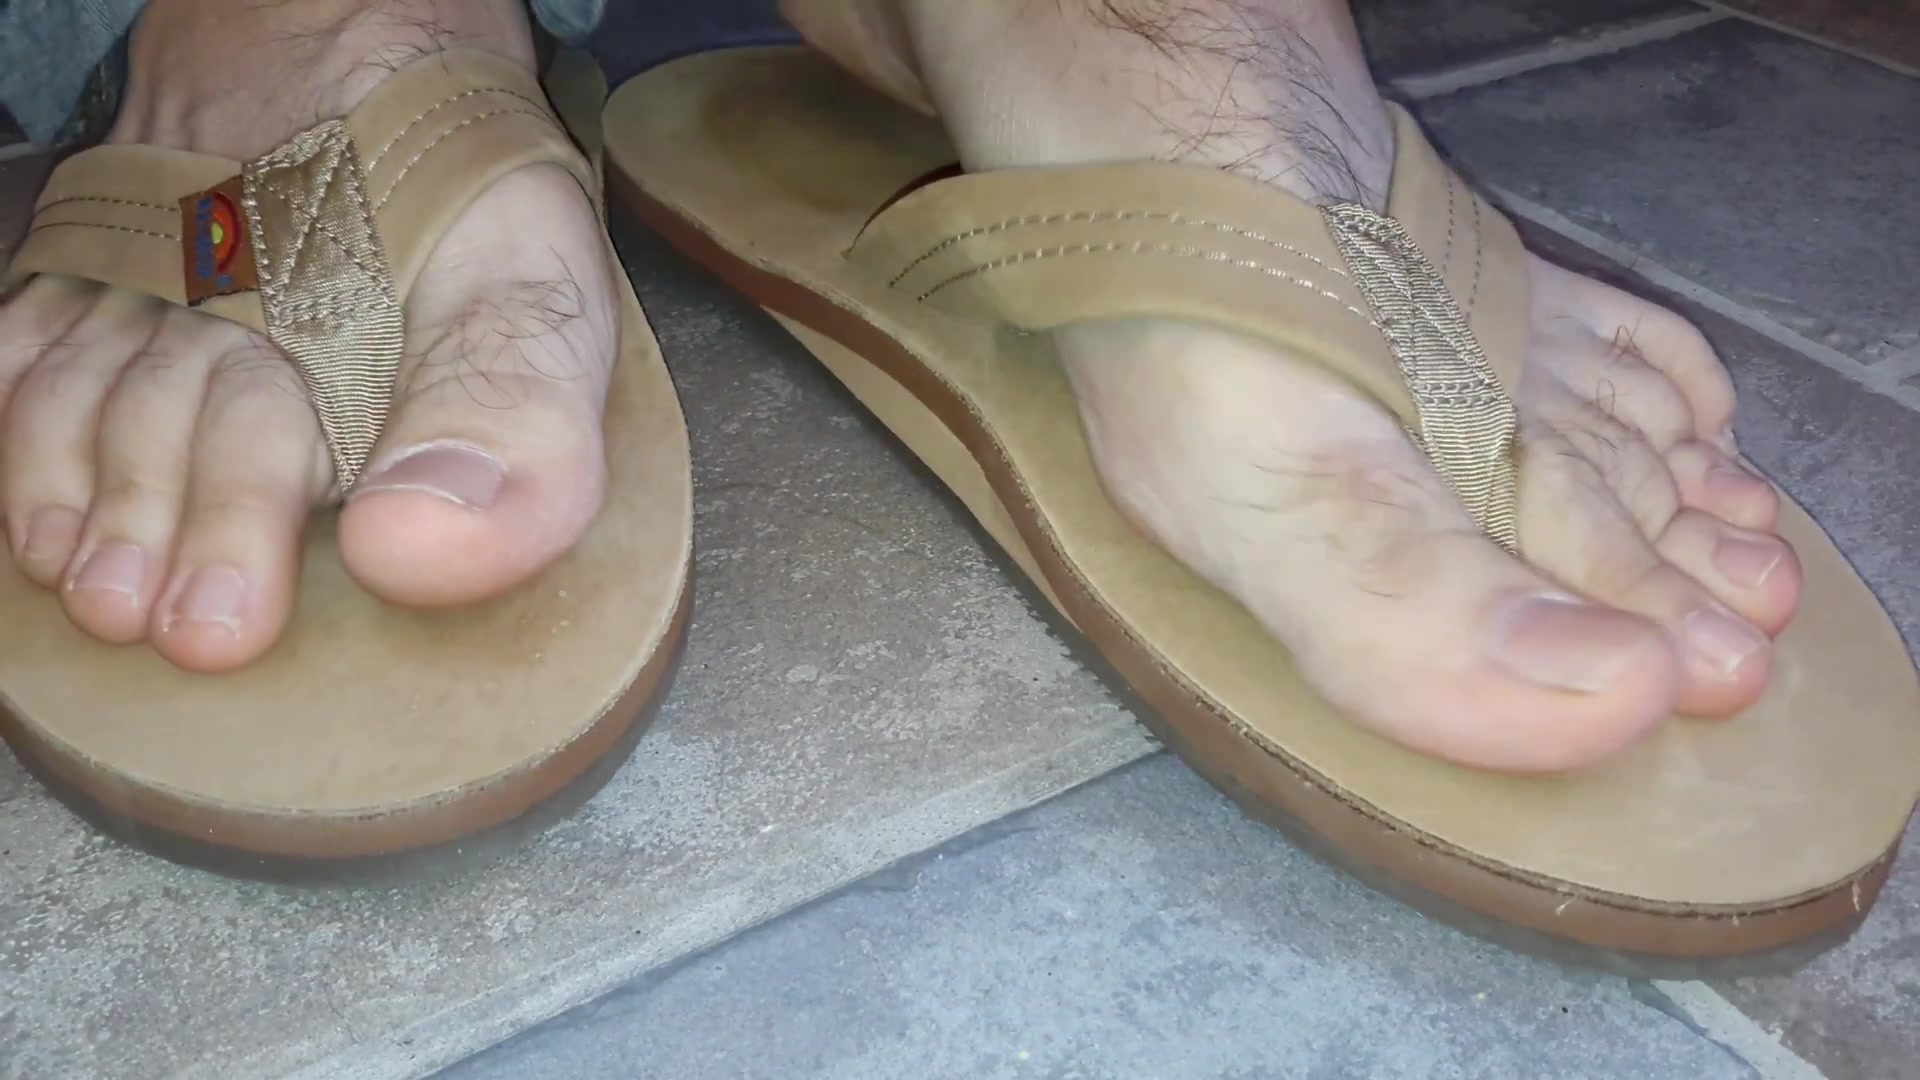 Male feet in flip flops - video 6